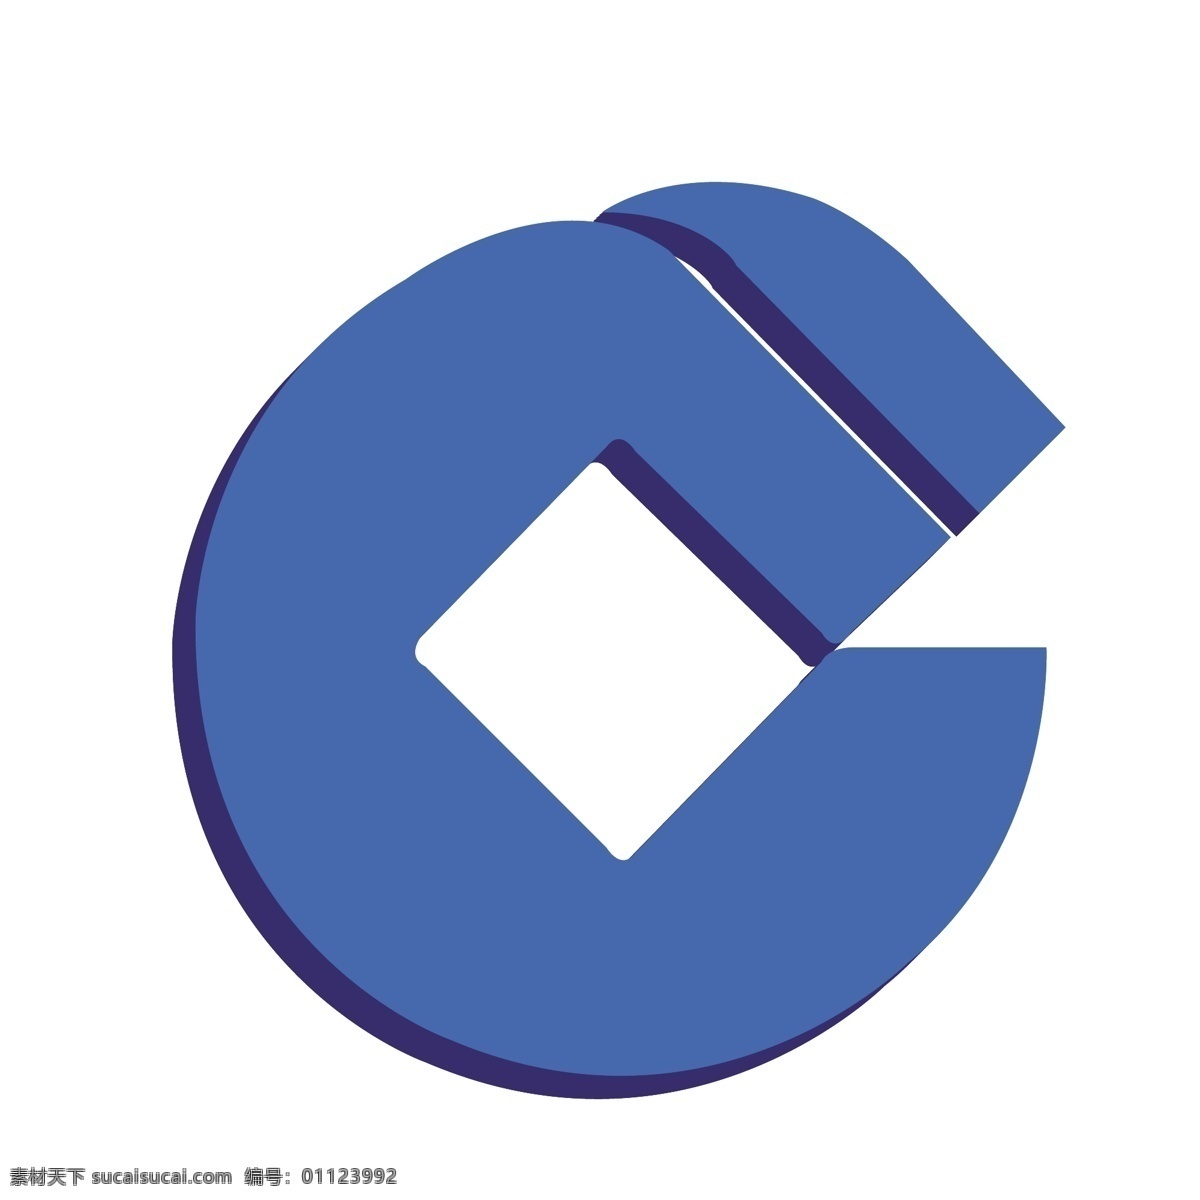 中国建设银行 d 蓝色 logo 图标 2.5d logo图标 贷款机构 货币信贷 矢量银行 金融机构 手机app 免抠图png 千库原创